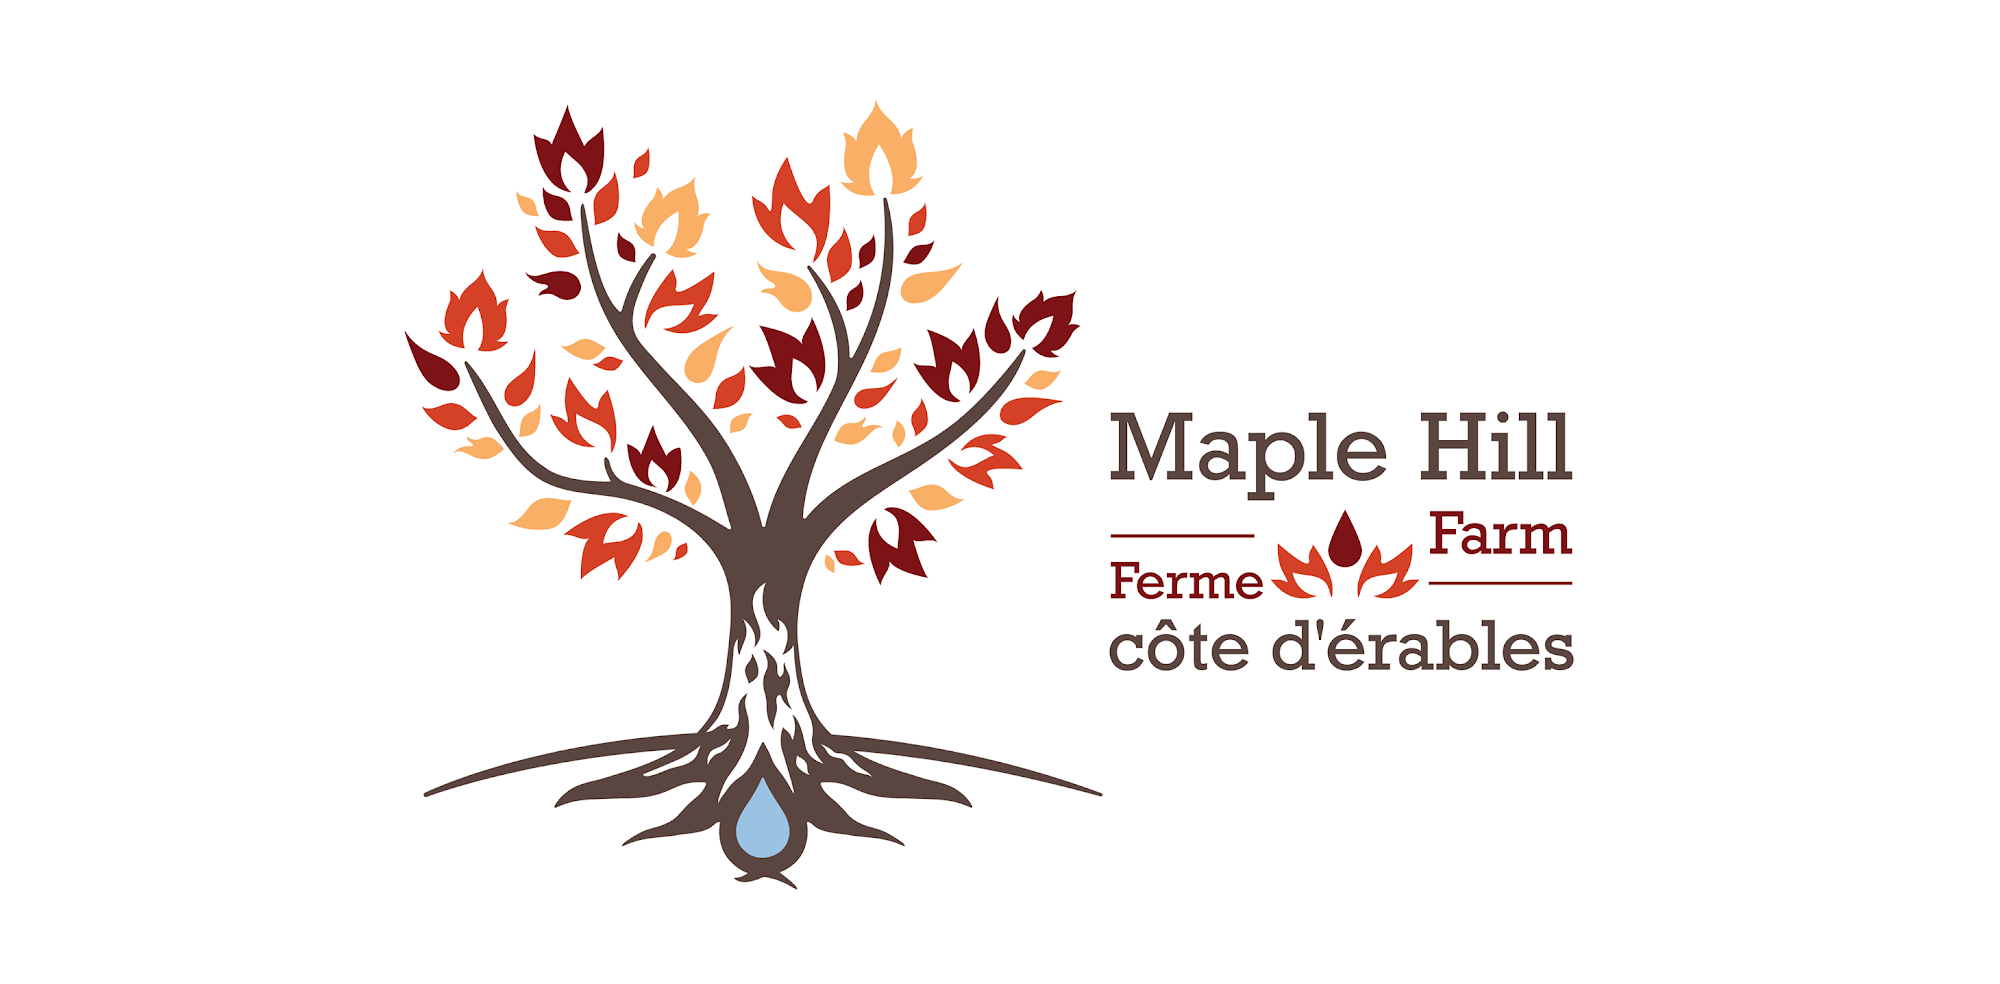 Maple Hill Farm – Ferme côte d’érables 450 Dominion Dr, Hanmer Ontario P3P 0A8